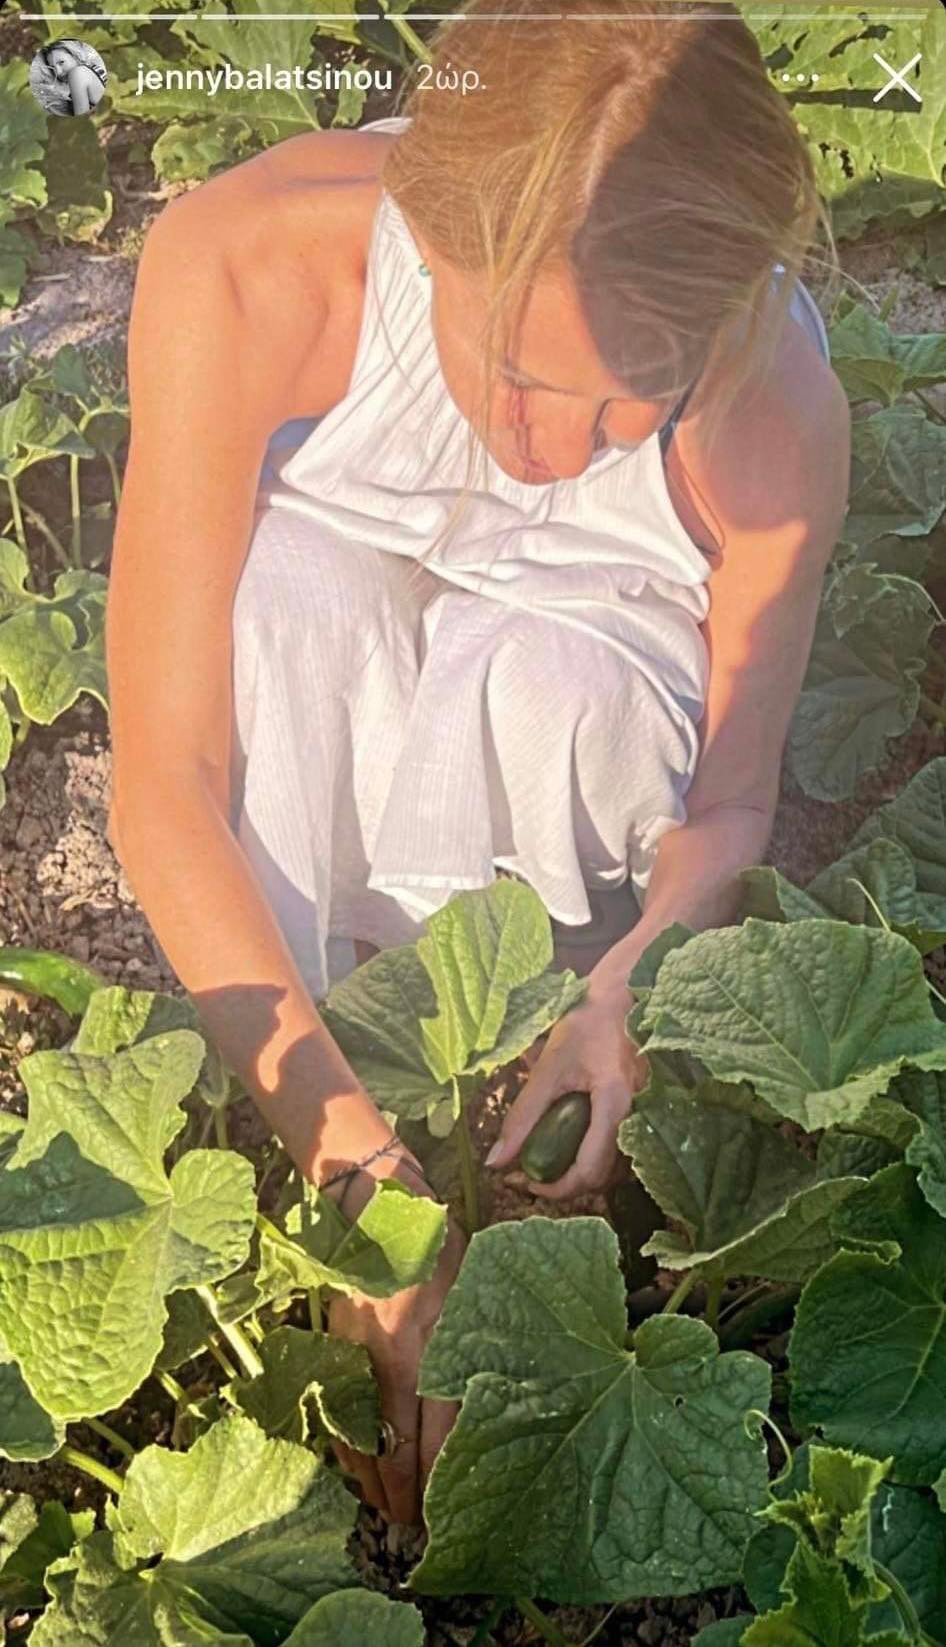 Τζένη Μπαλατσινού: Απαθανατίζεται στο καταπράσινο μποστάνι του κήπου της και μας δείχνει πως το περιποιείται